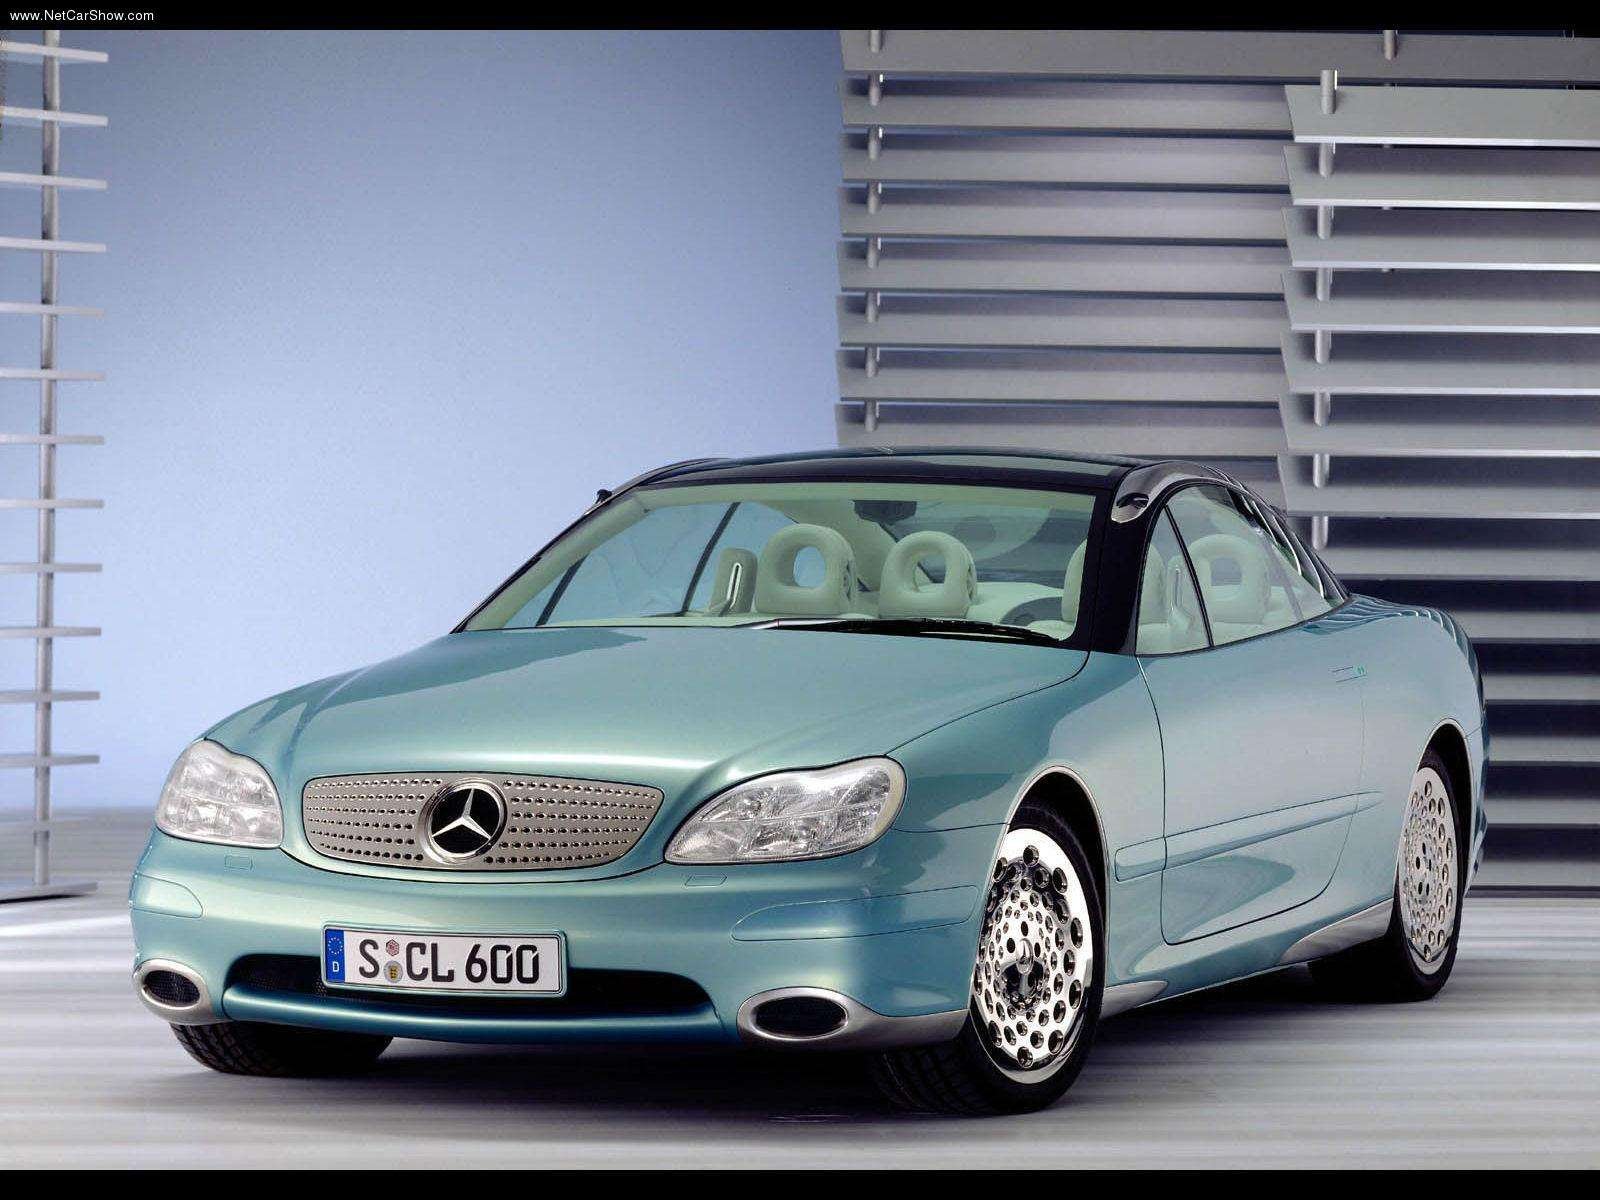 mercedes, Benz, F200, Concept, Cars, 1996 Wallpaper